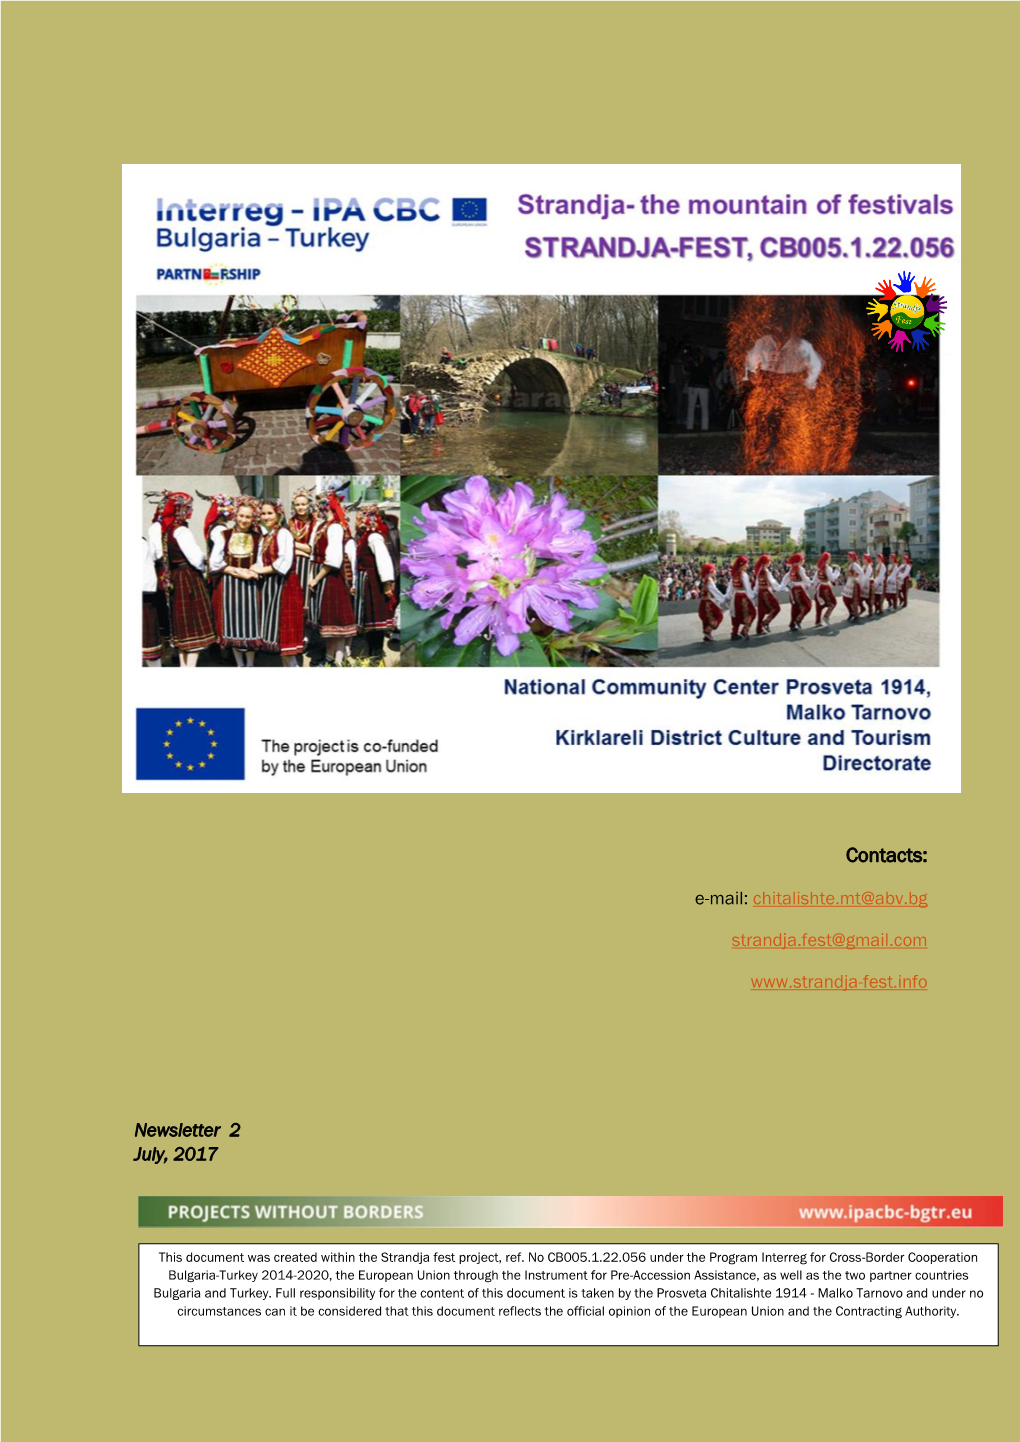 Strandja -The Mountain of Festivals (STRANDJA-FEST) CB005.1.22.056